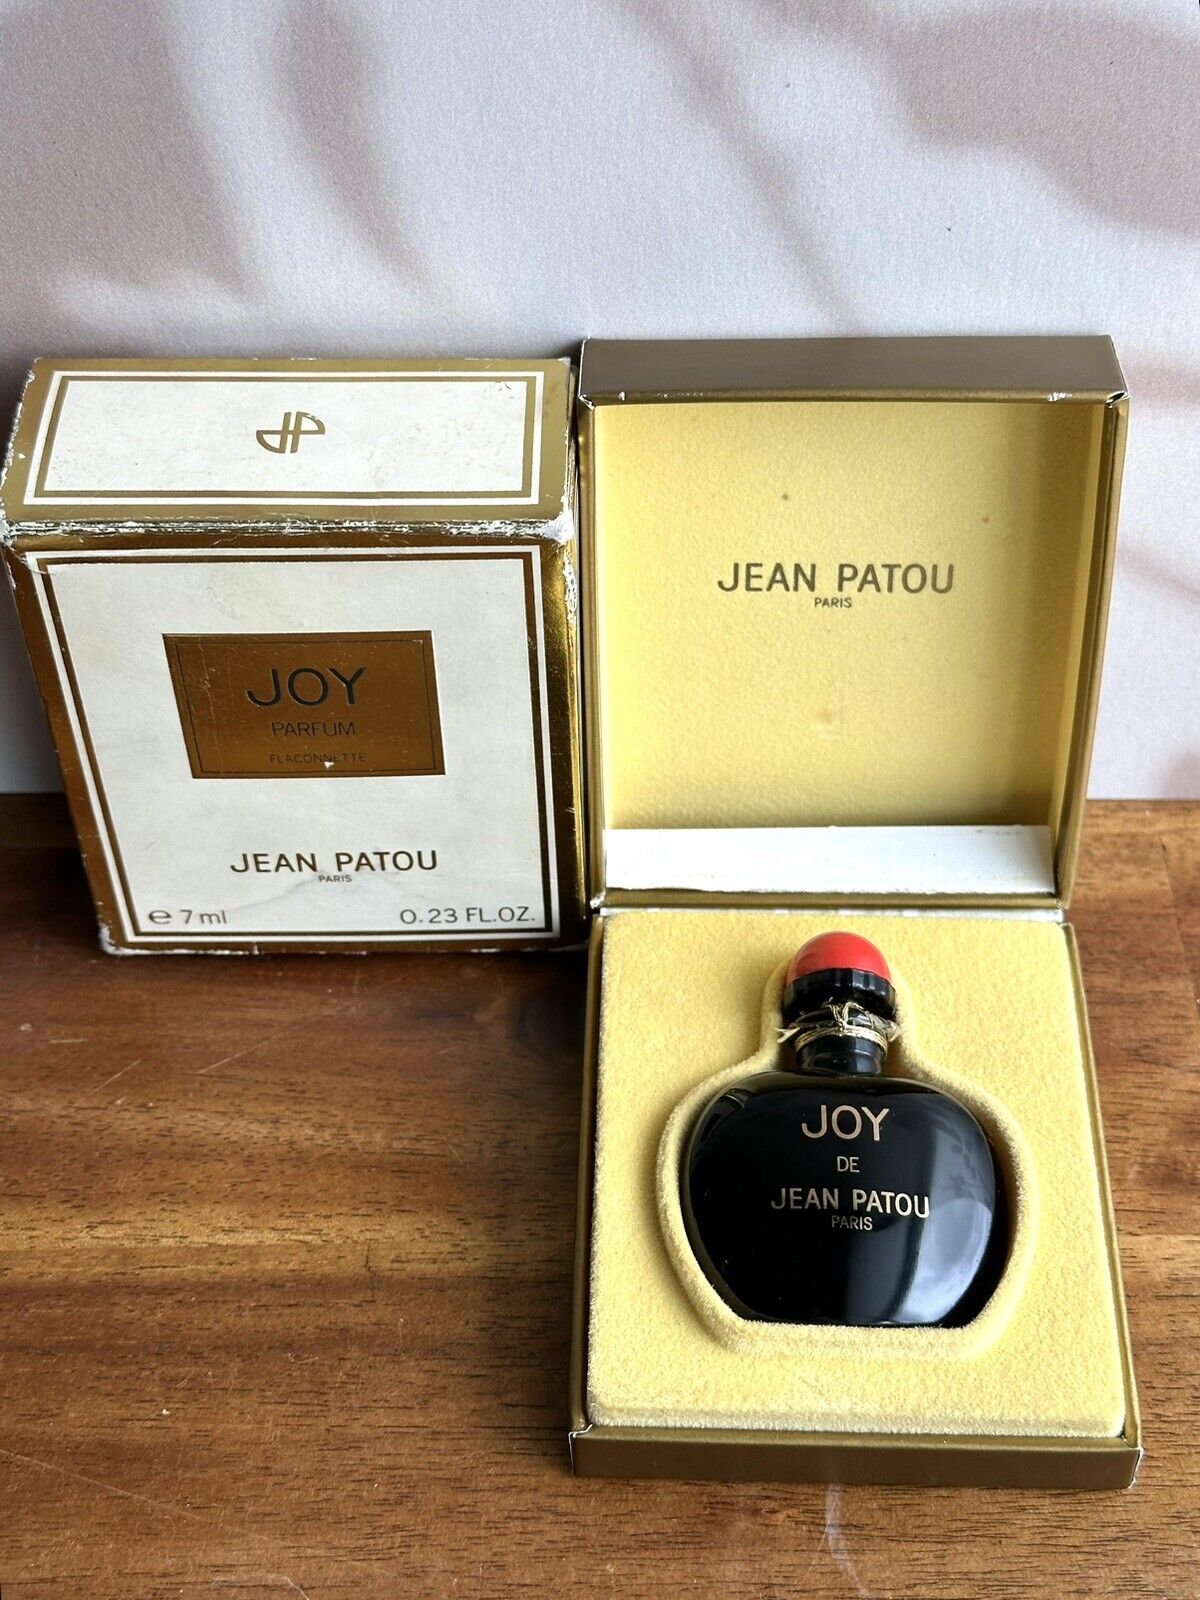 Vintage JEAN PATOU JOY Pure Perfume Parfum Splash Unopened Bottle Collectible